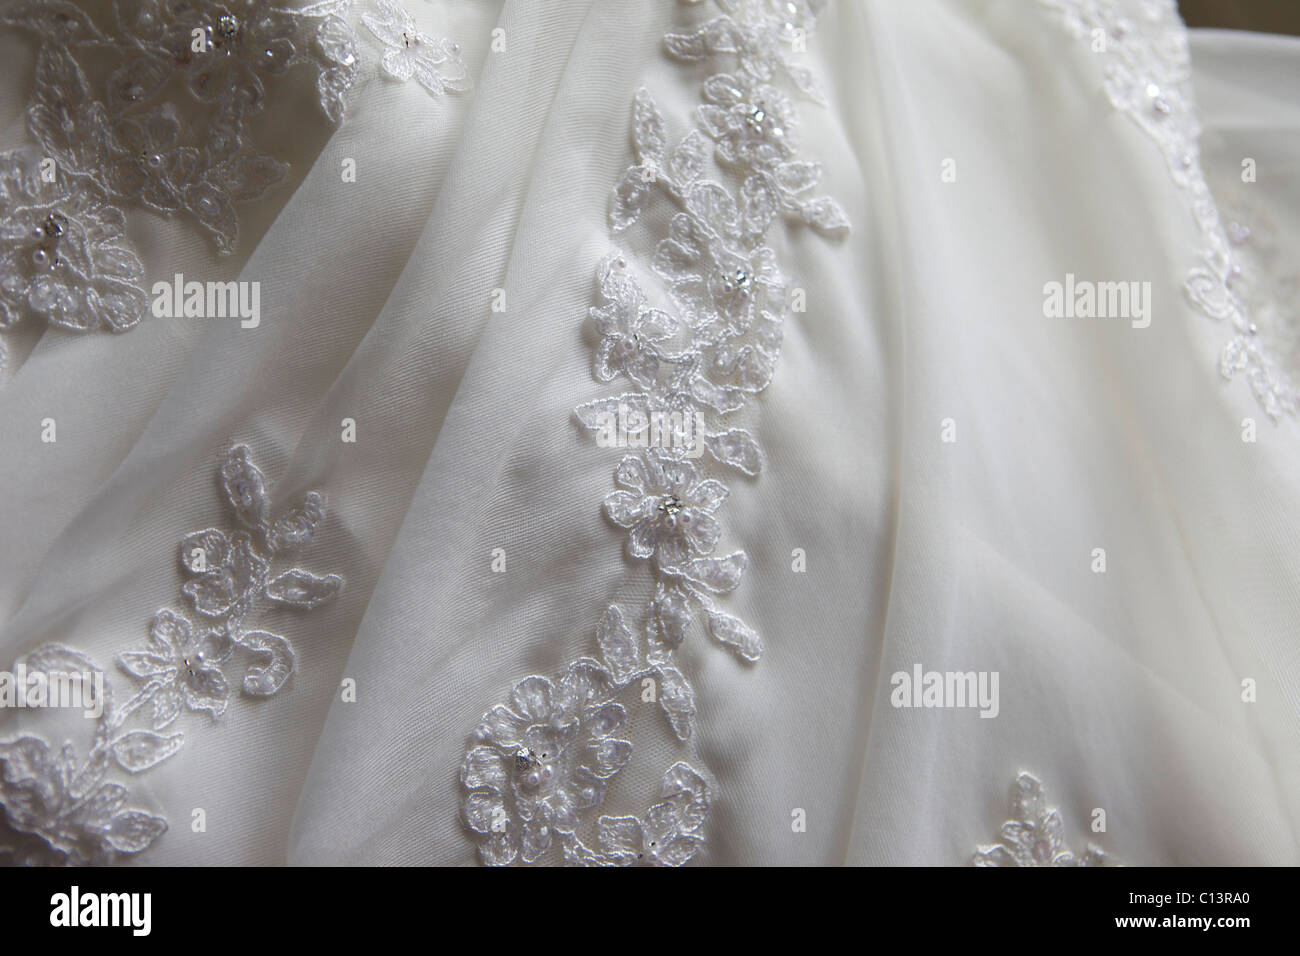 Eine Nahaufnahme von einem Hochzeitskleid zeigt die Details der Blumen. Stockfoto